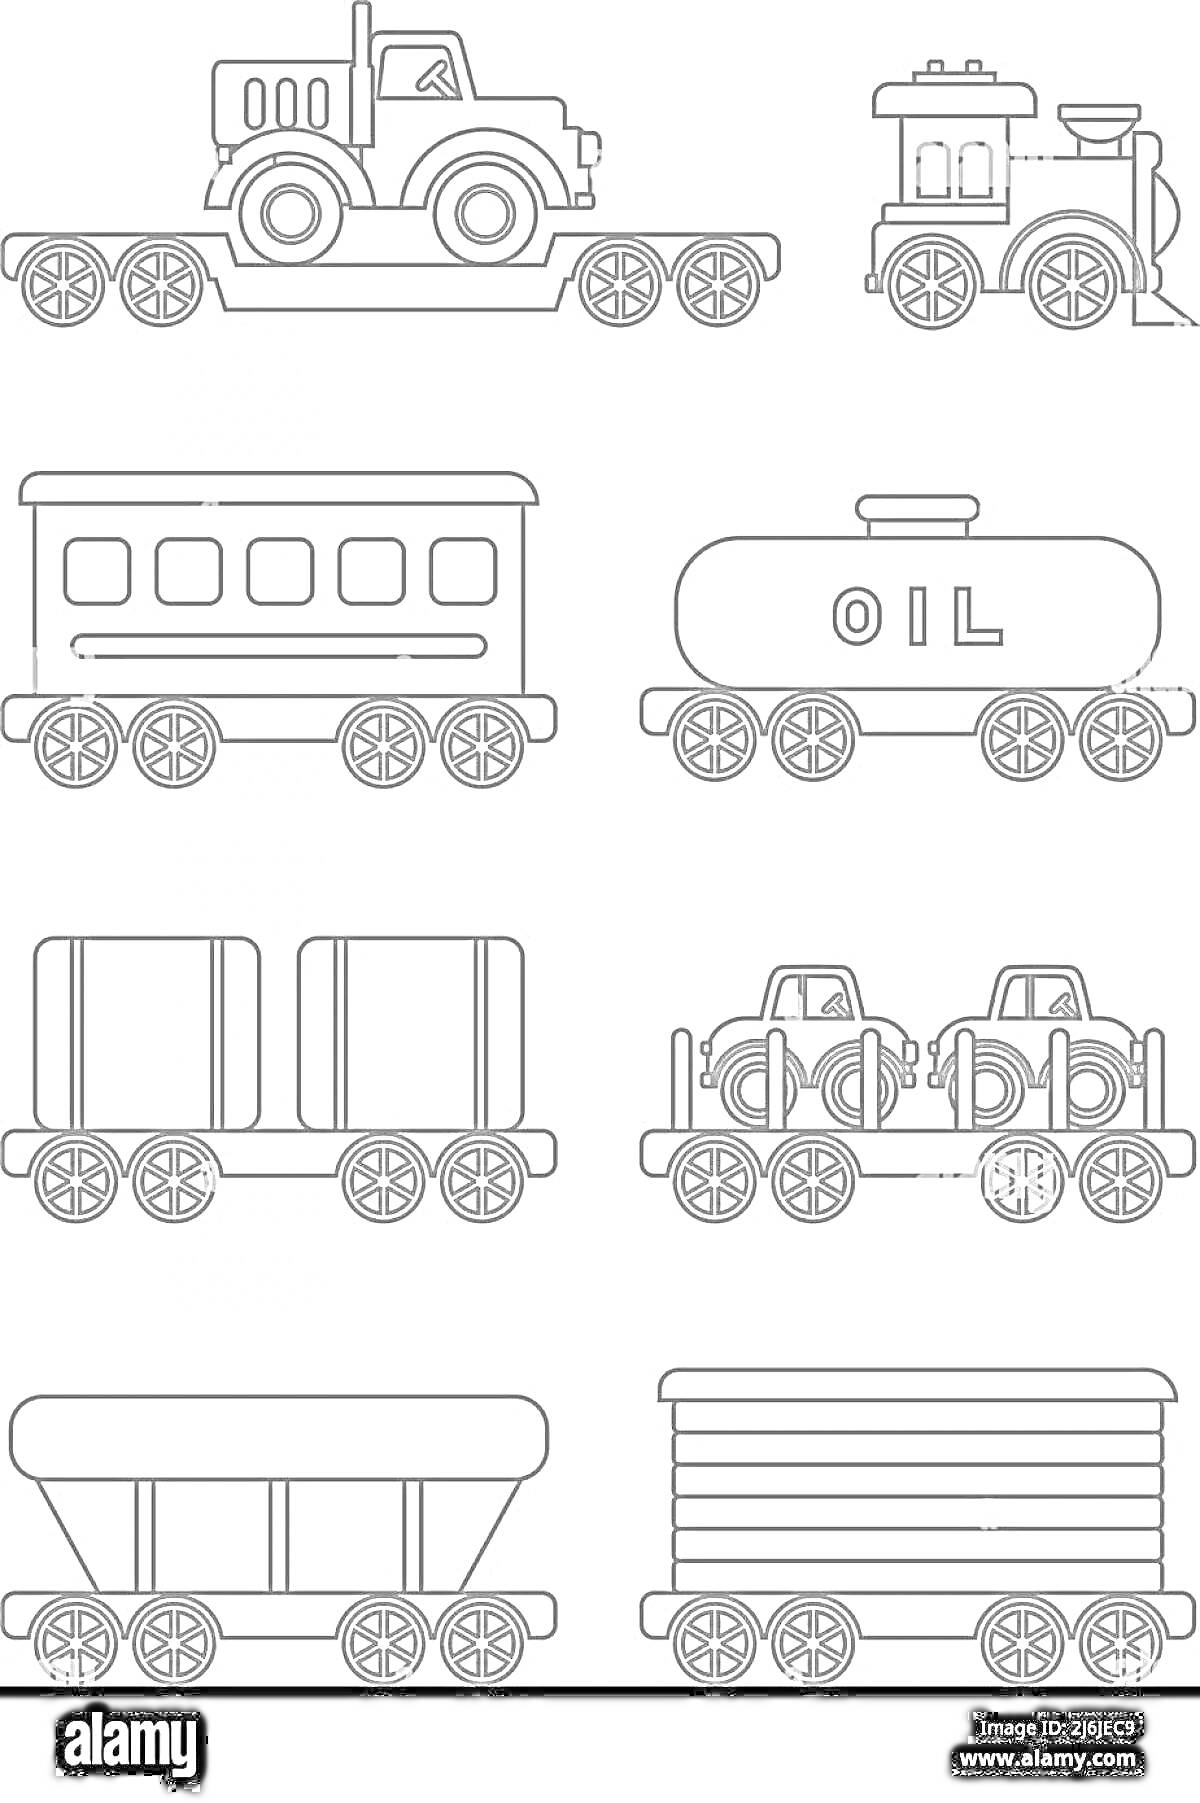 Раскраска Грузовой поезд с локомотивом, вагоном-тюремчиком, цистерной с надписью 